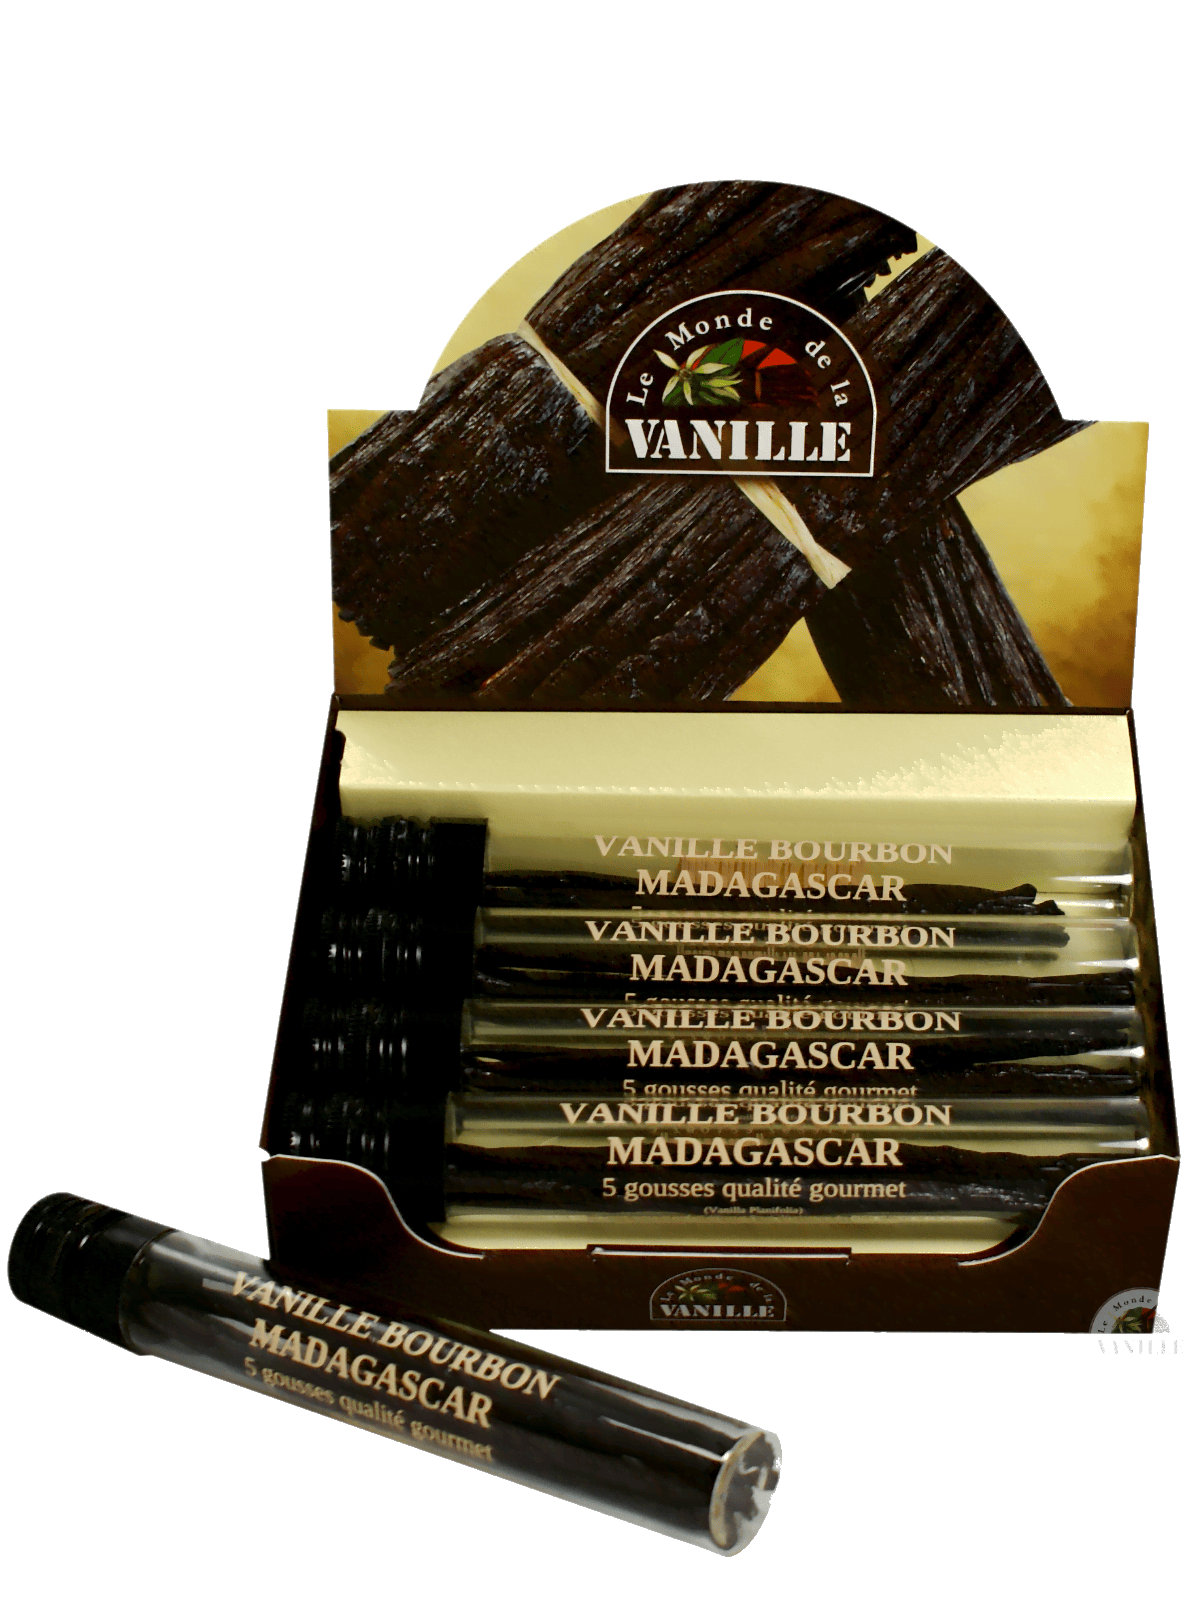 display 10 vanilletuben madagaskar die welt der vanille